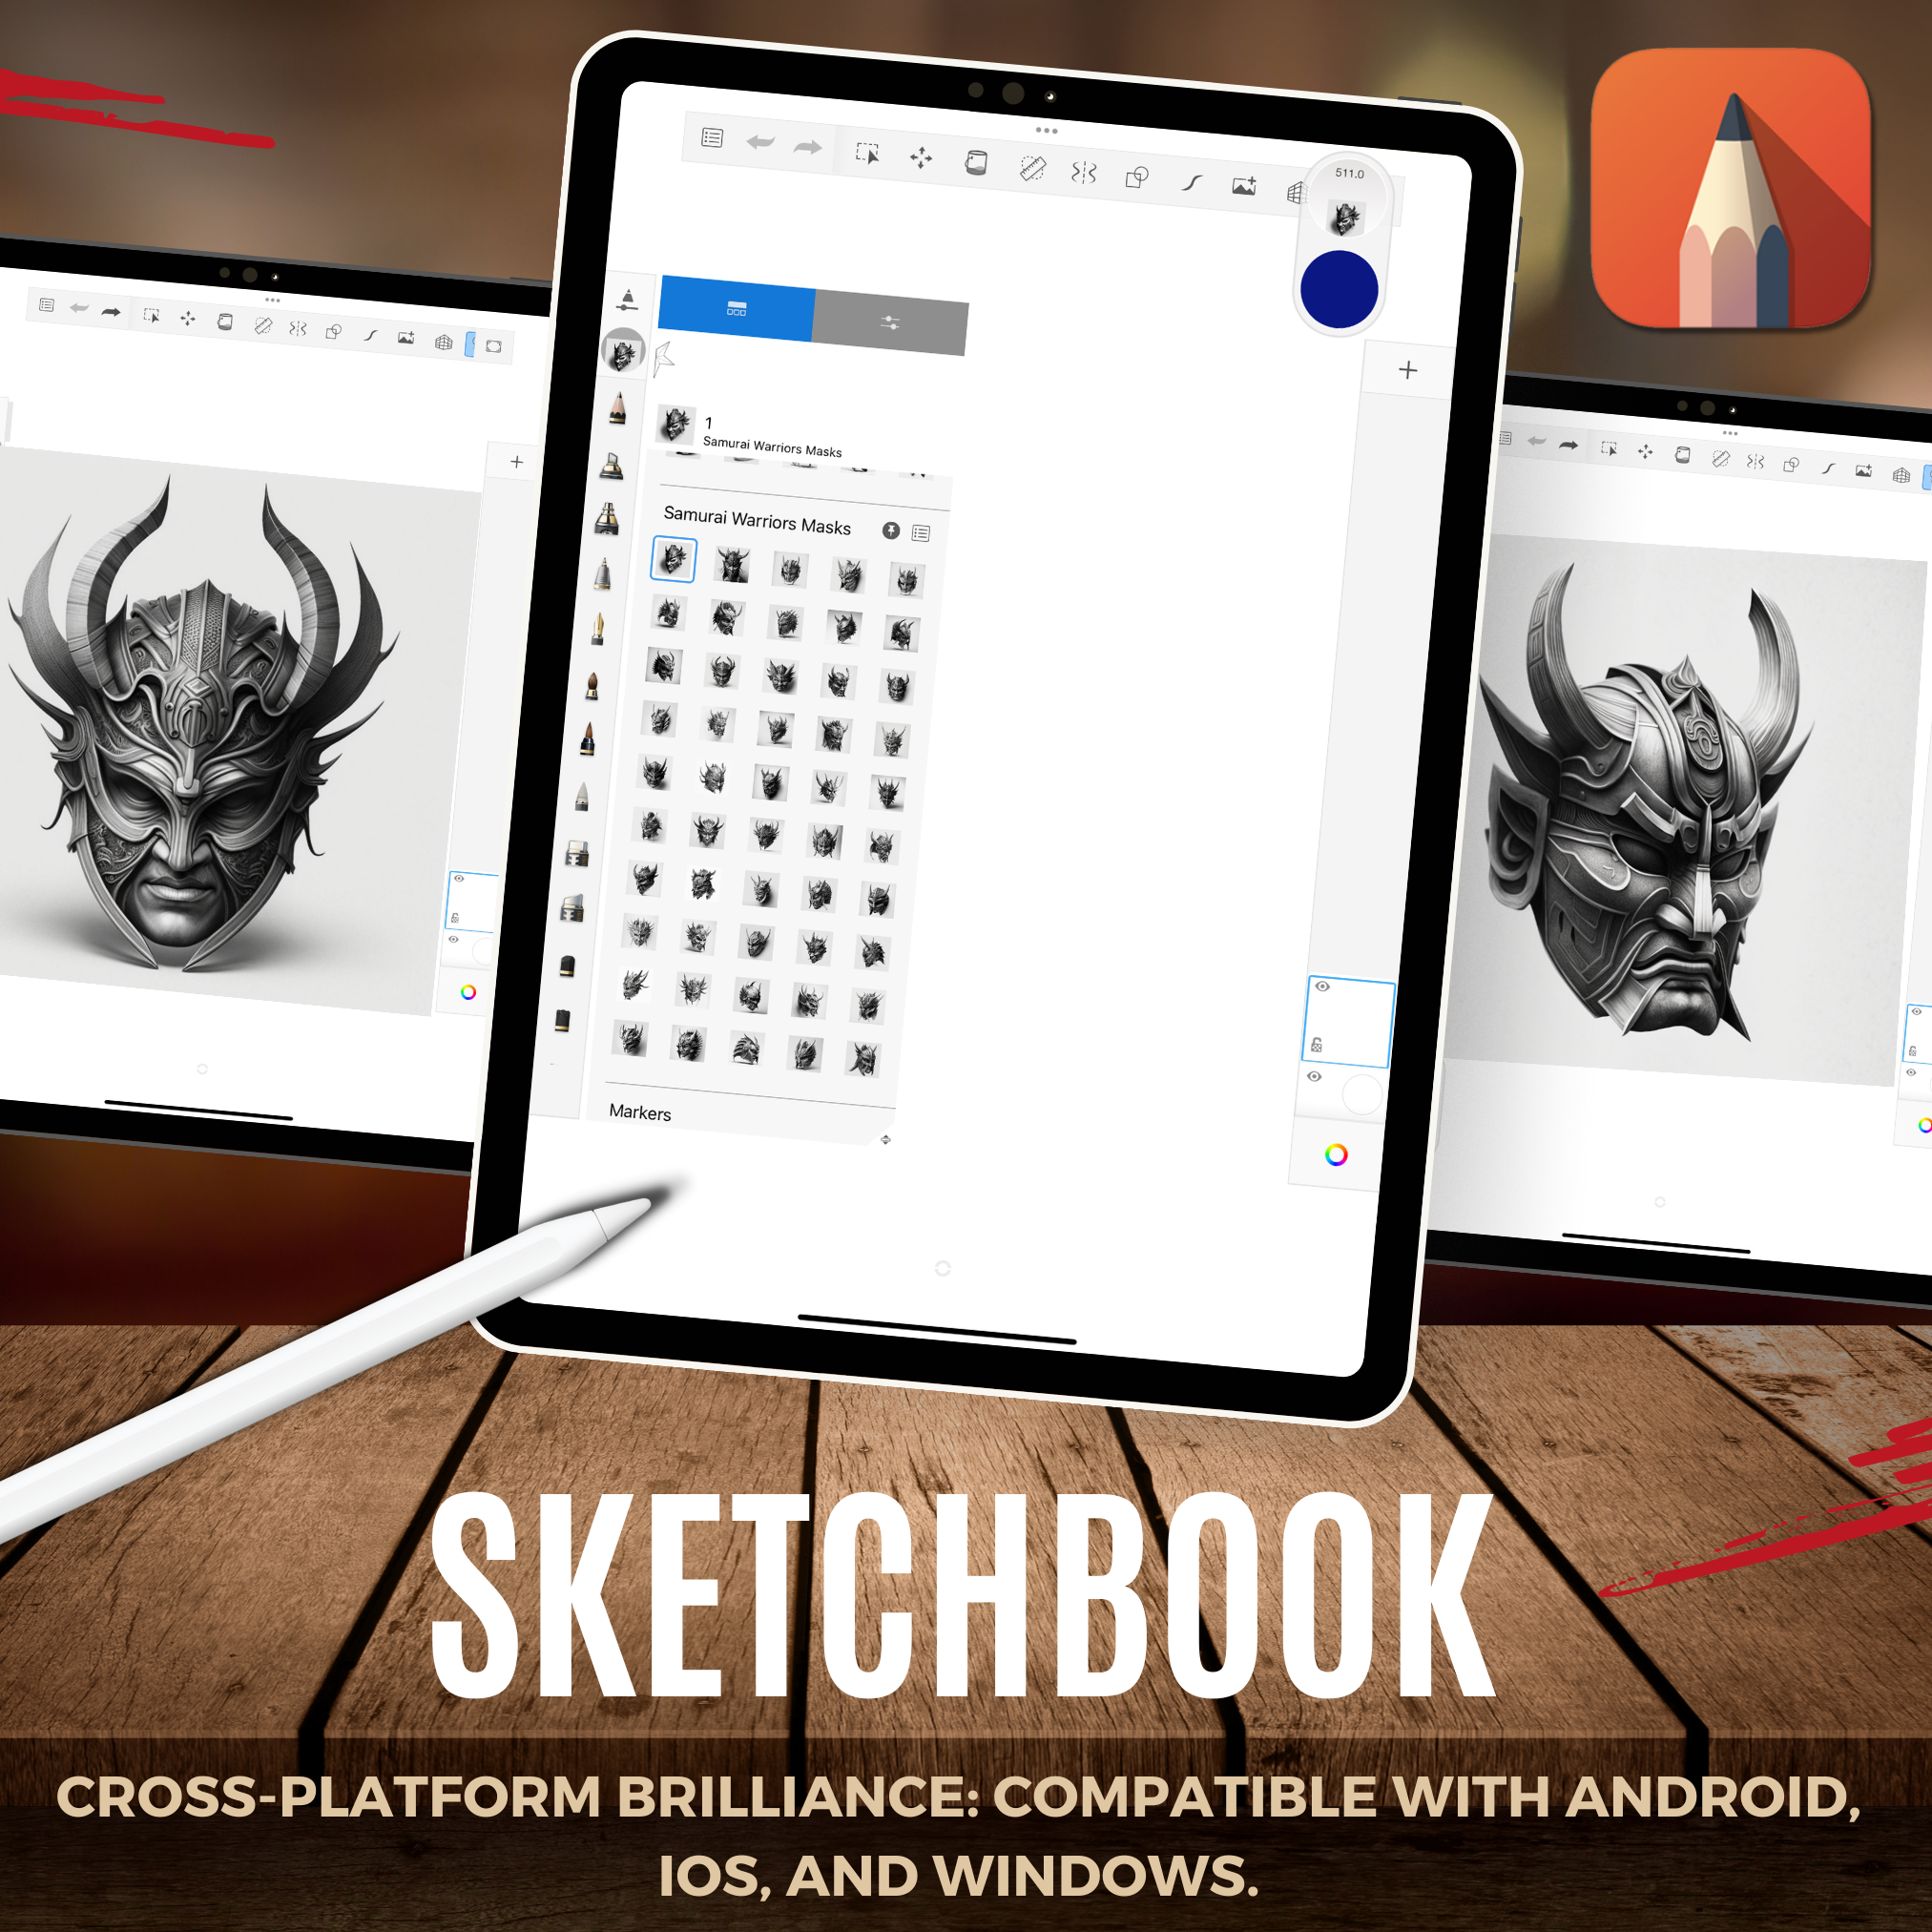 Samurai Warrior Masks Digital Reference Design Collection: 50 Procreate & Sketchbook Images